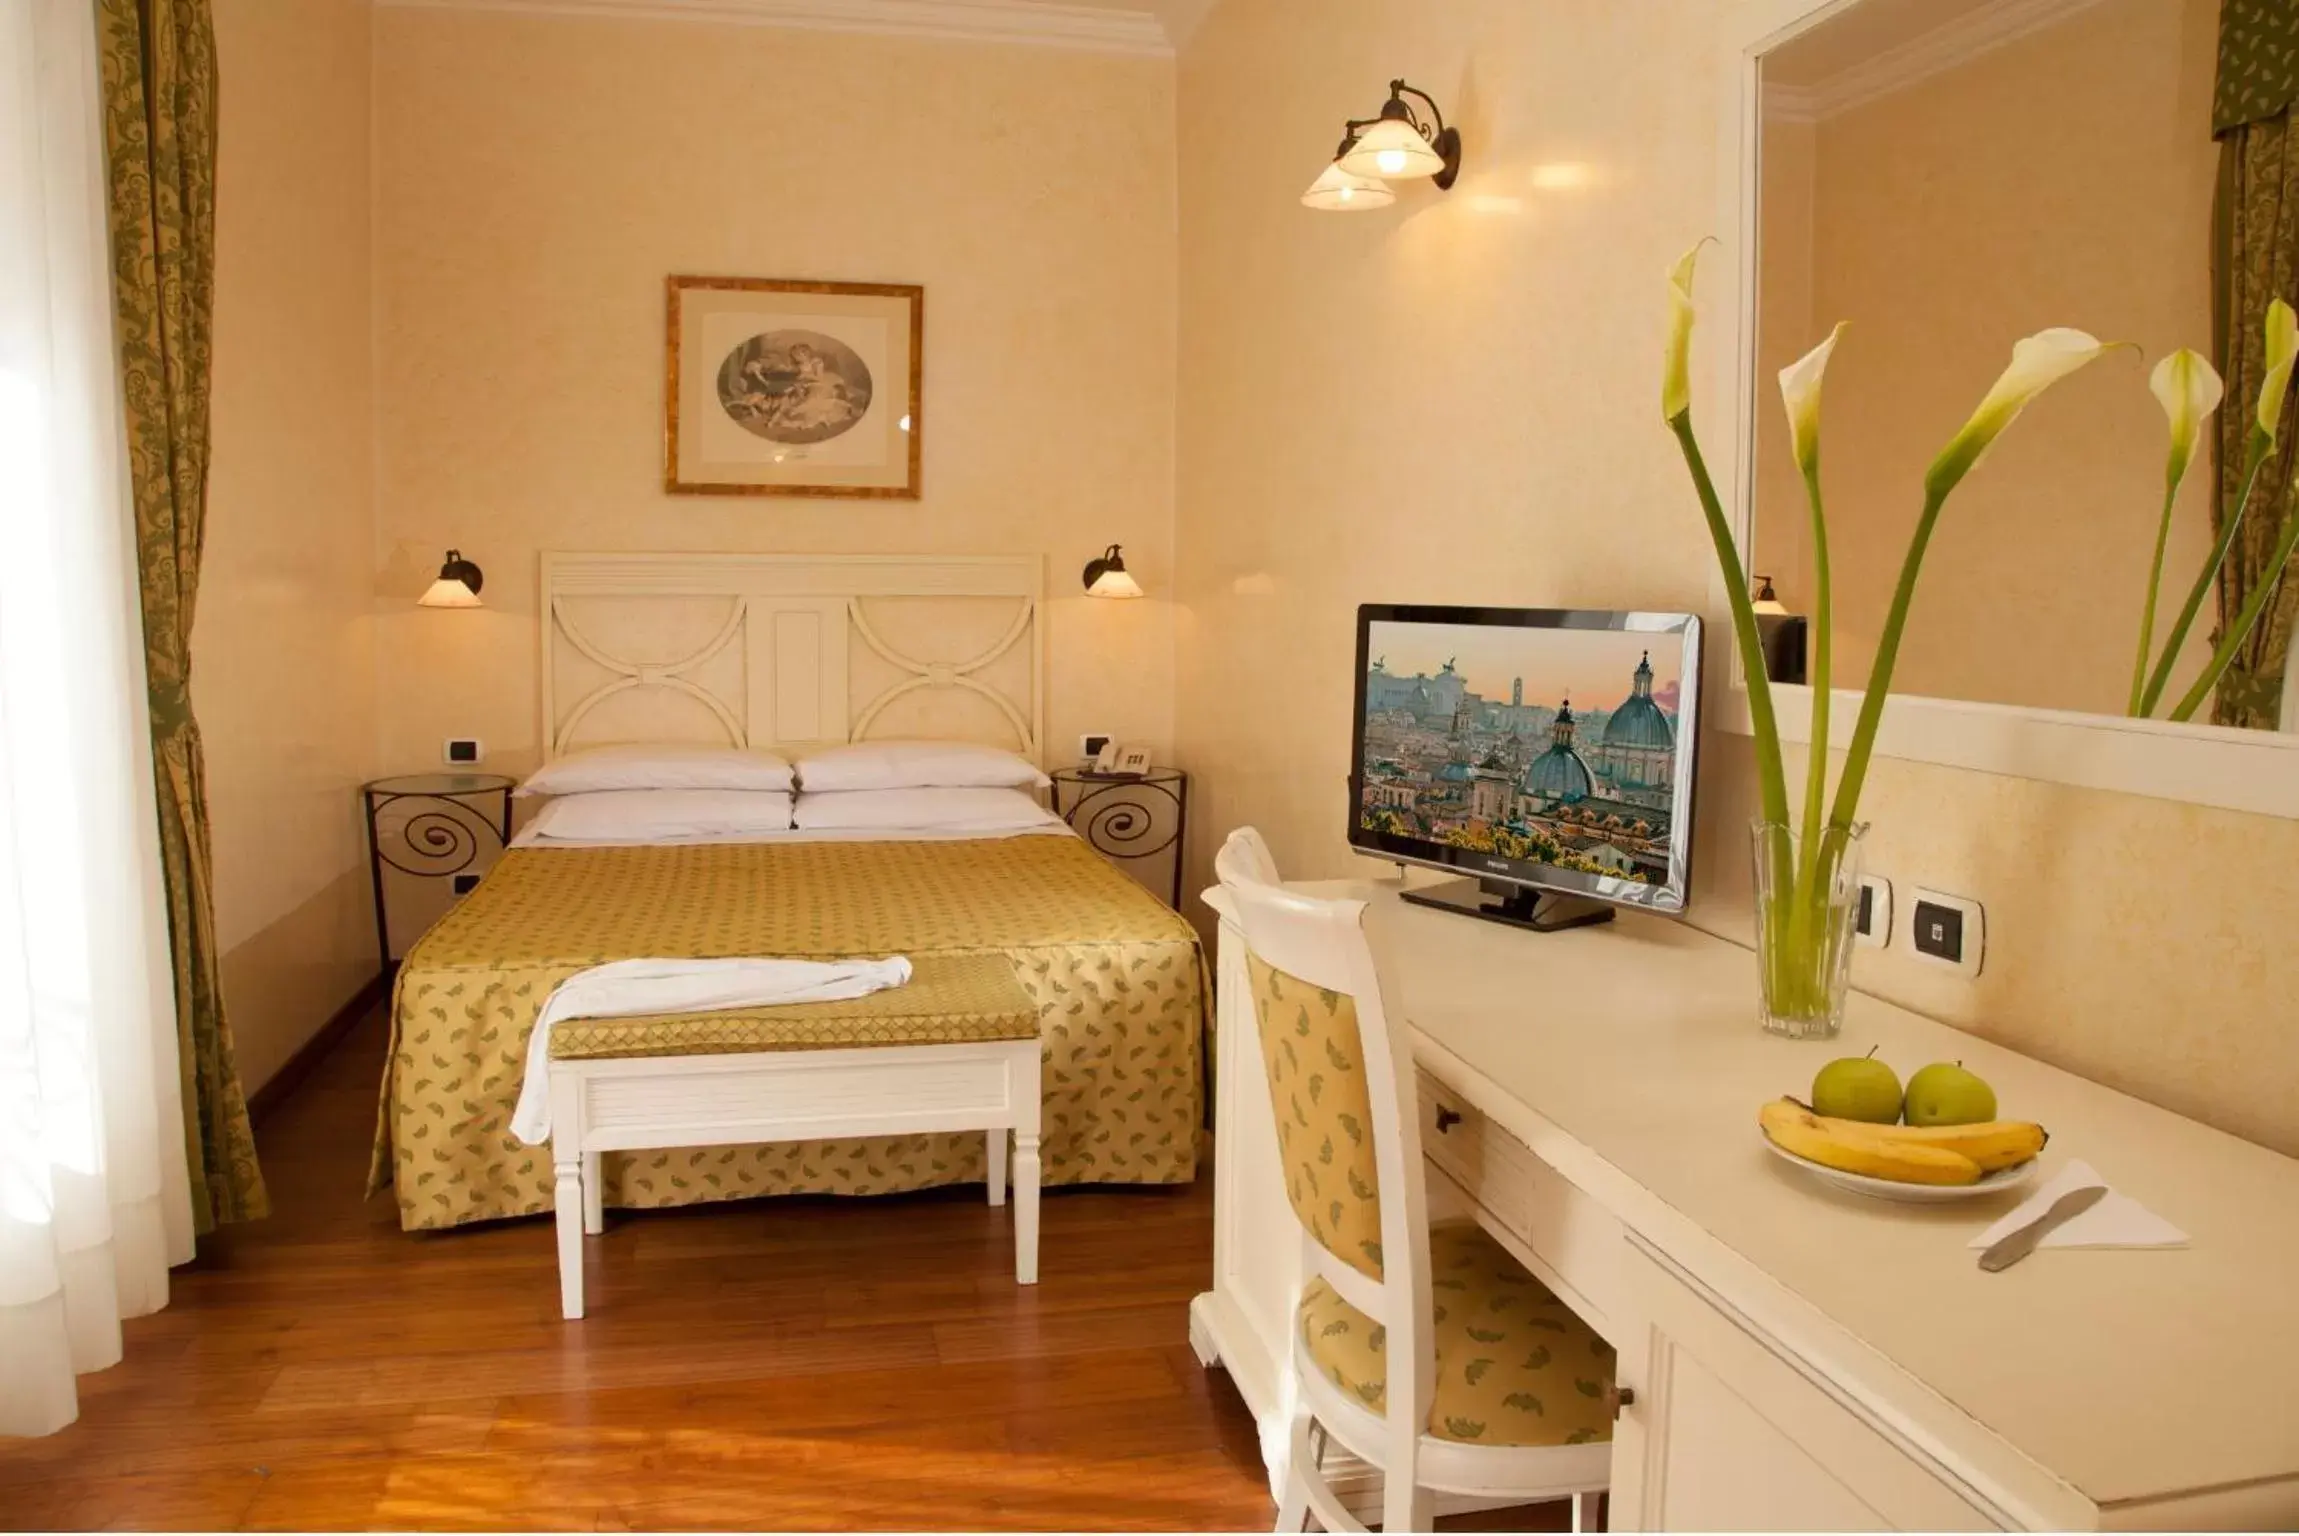 Bedroom, Room Photo in Hotel Piemonte